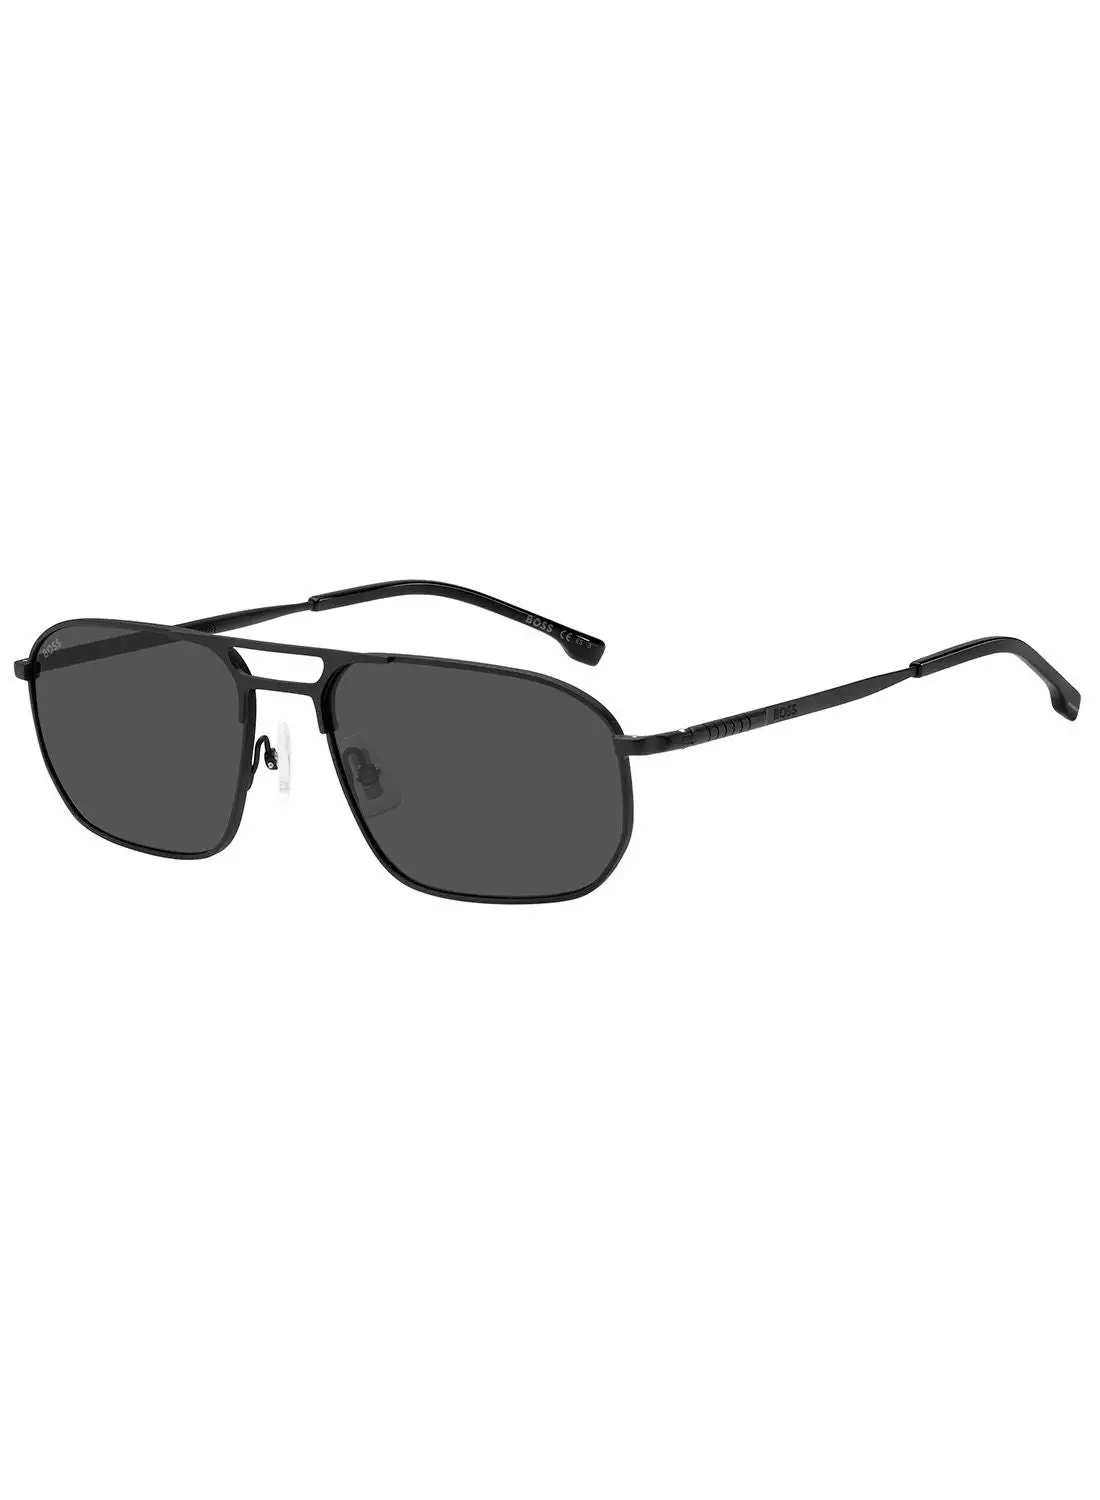 هيوغو بوس نظارة شمسية نافيجيتور للحماية من الأشعة فوق البنفسجية للرجال - Boss 1446/S Mtt Black 59 - مقاس العدسة: 59 ملم